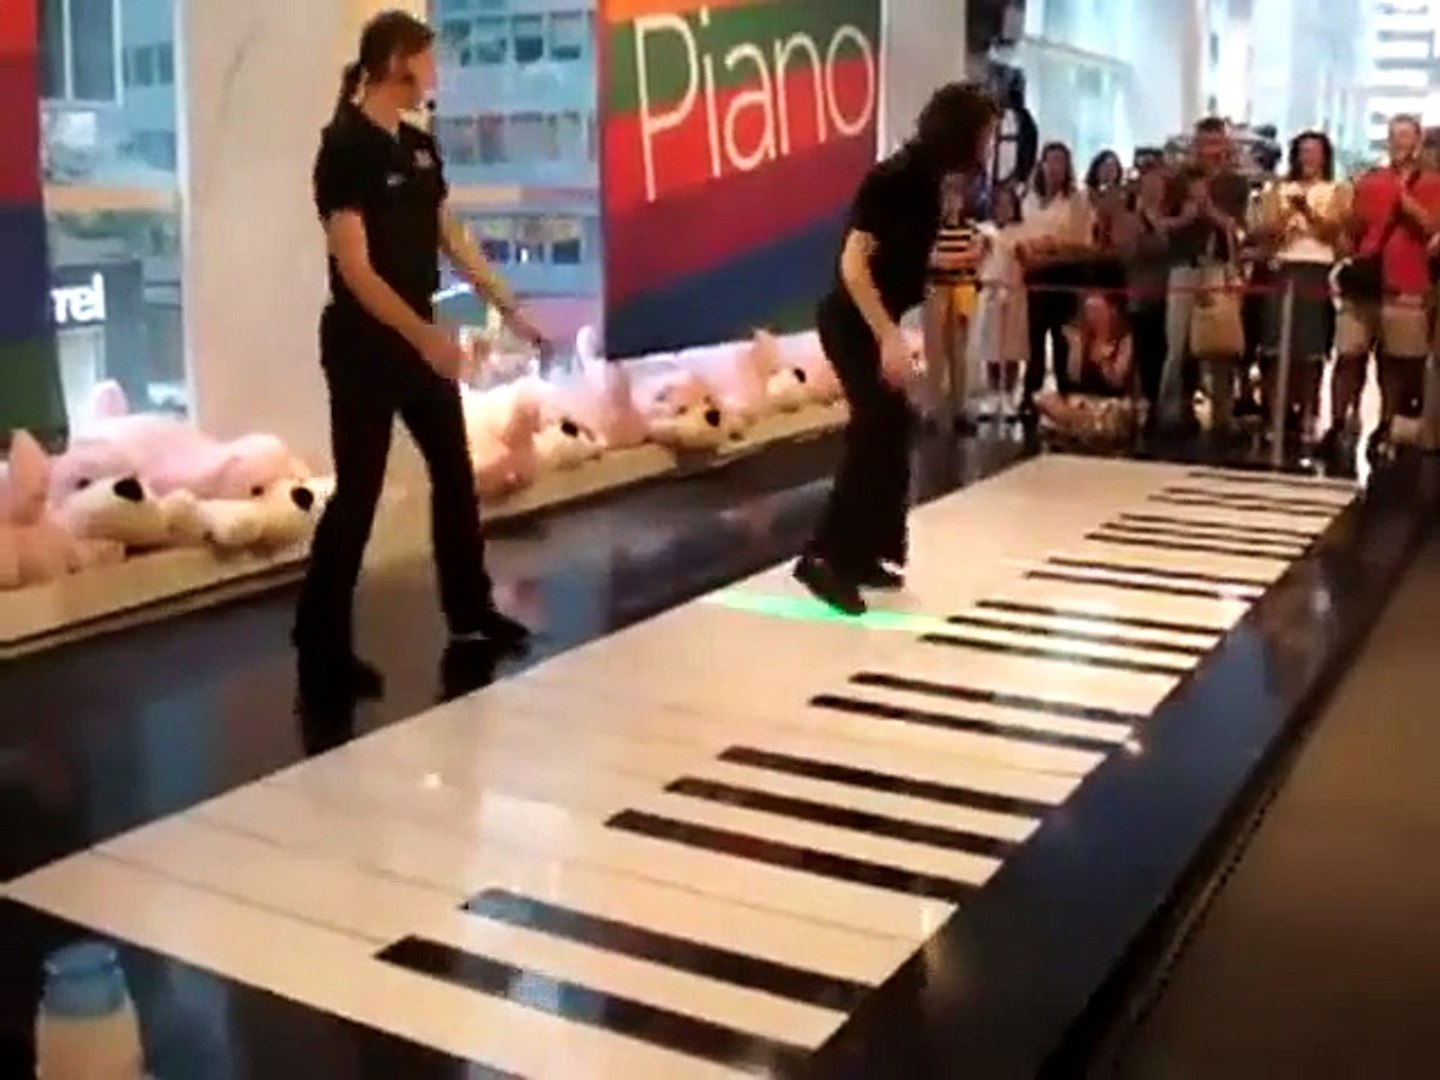 Jouer du piano avec ses pieds : Performance incroyable sur un piano géant -  TOCCATA ET FUGUE EN RÉ MINEUR - Vidéo Dailymotion